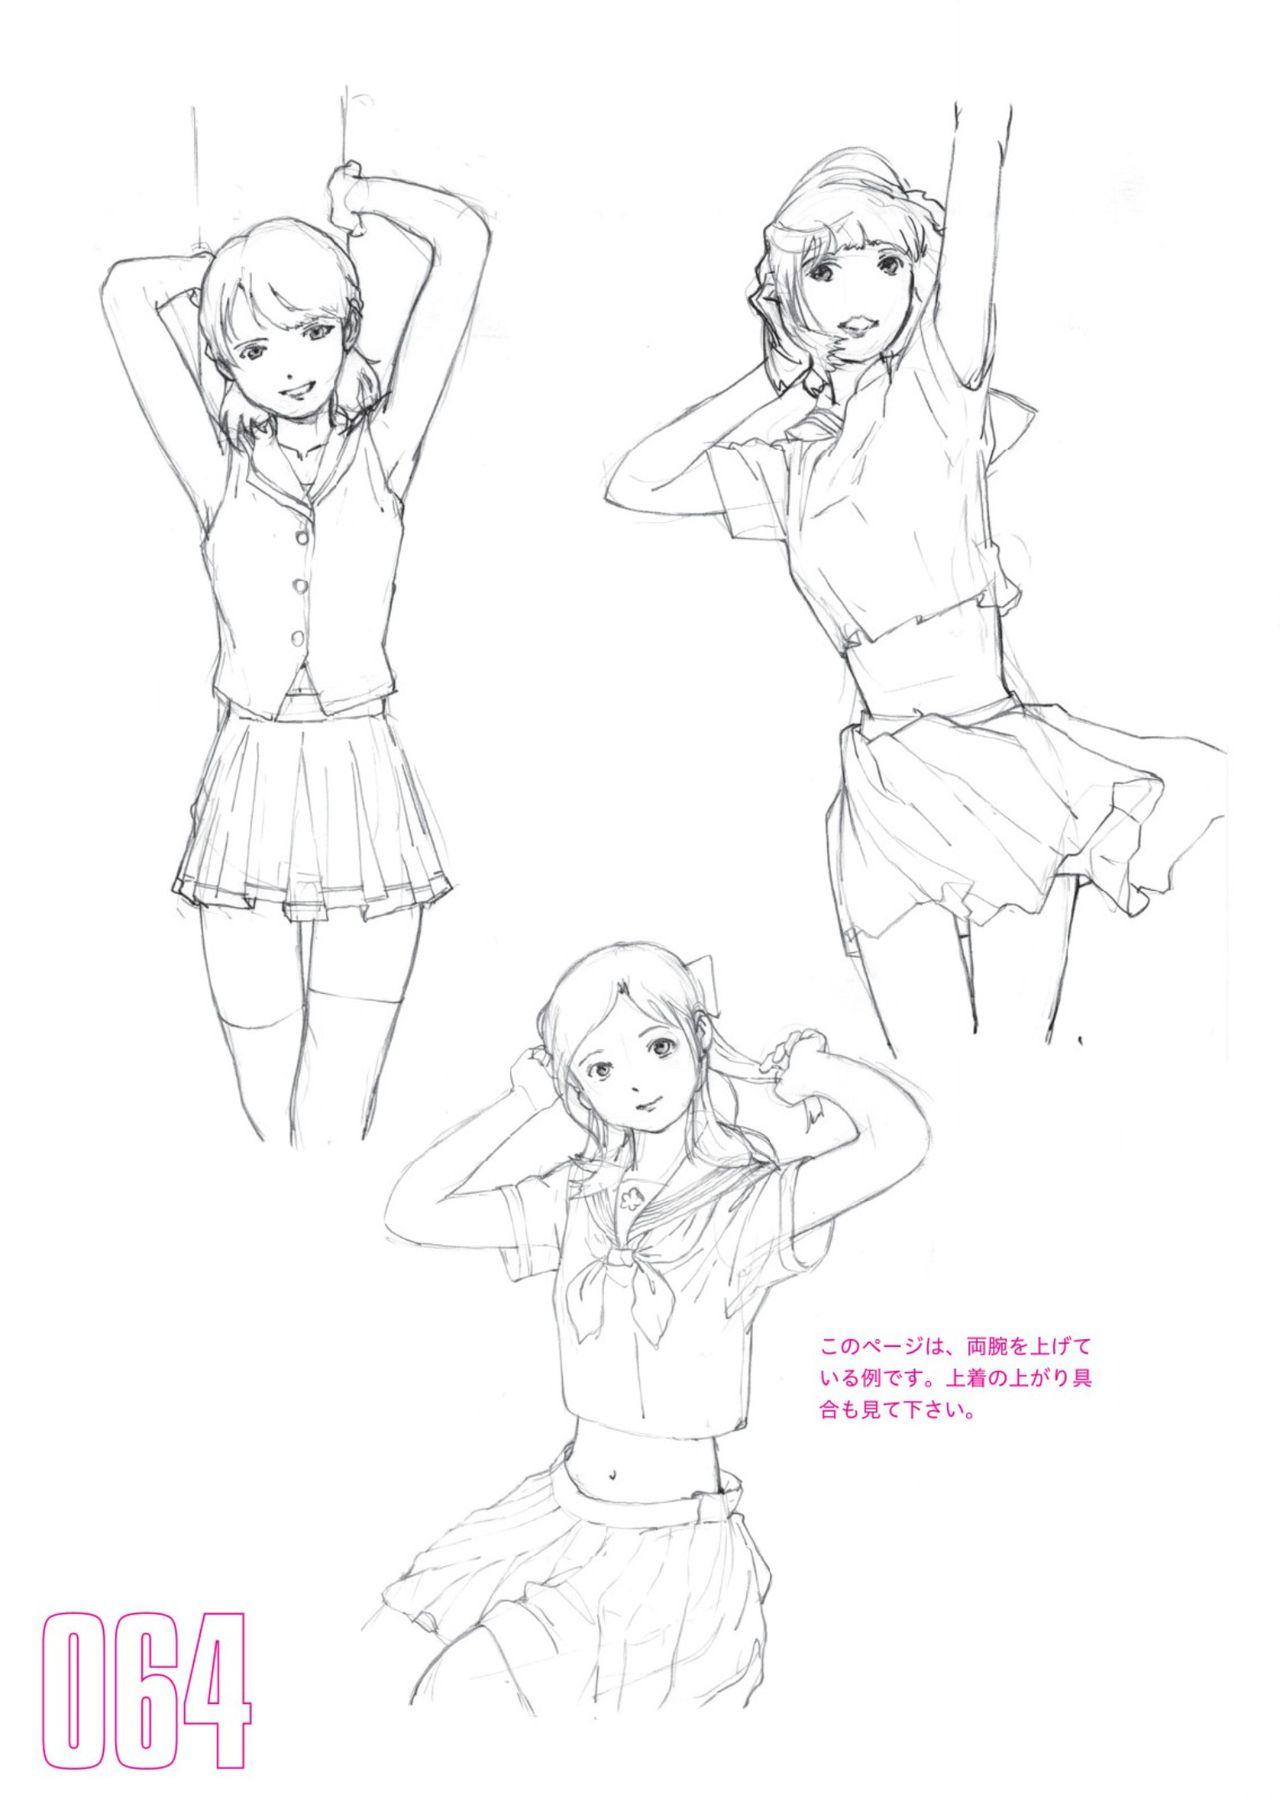 Toru Yoshida Tips for drawing women in 10 minutes 270 Uniforms 65